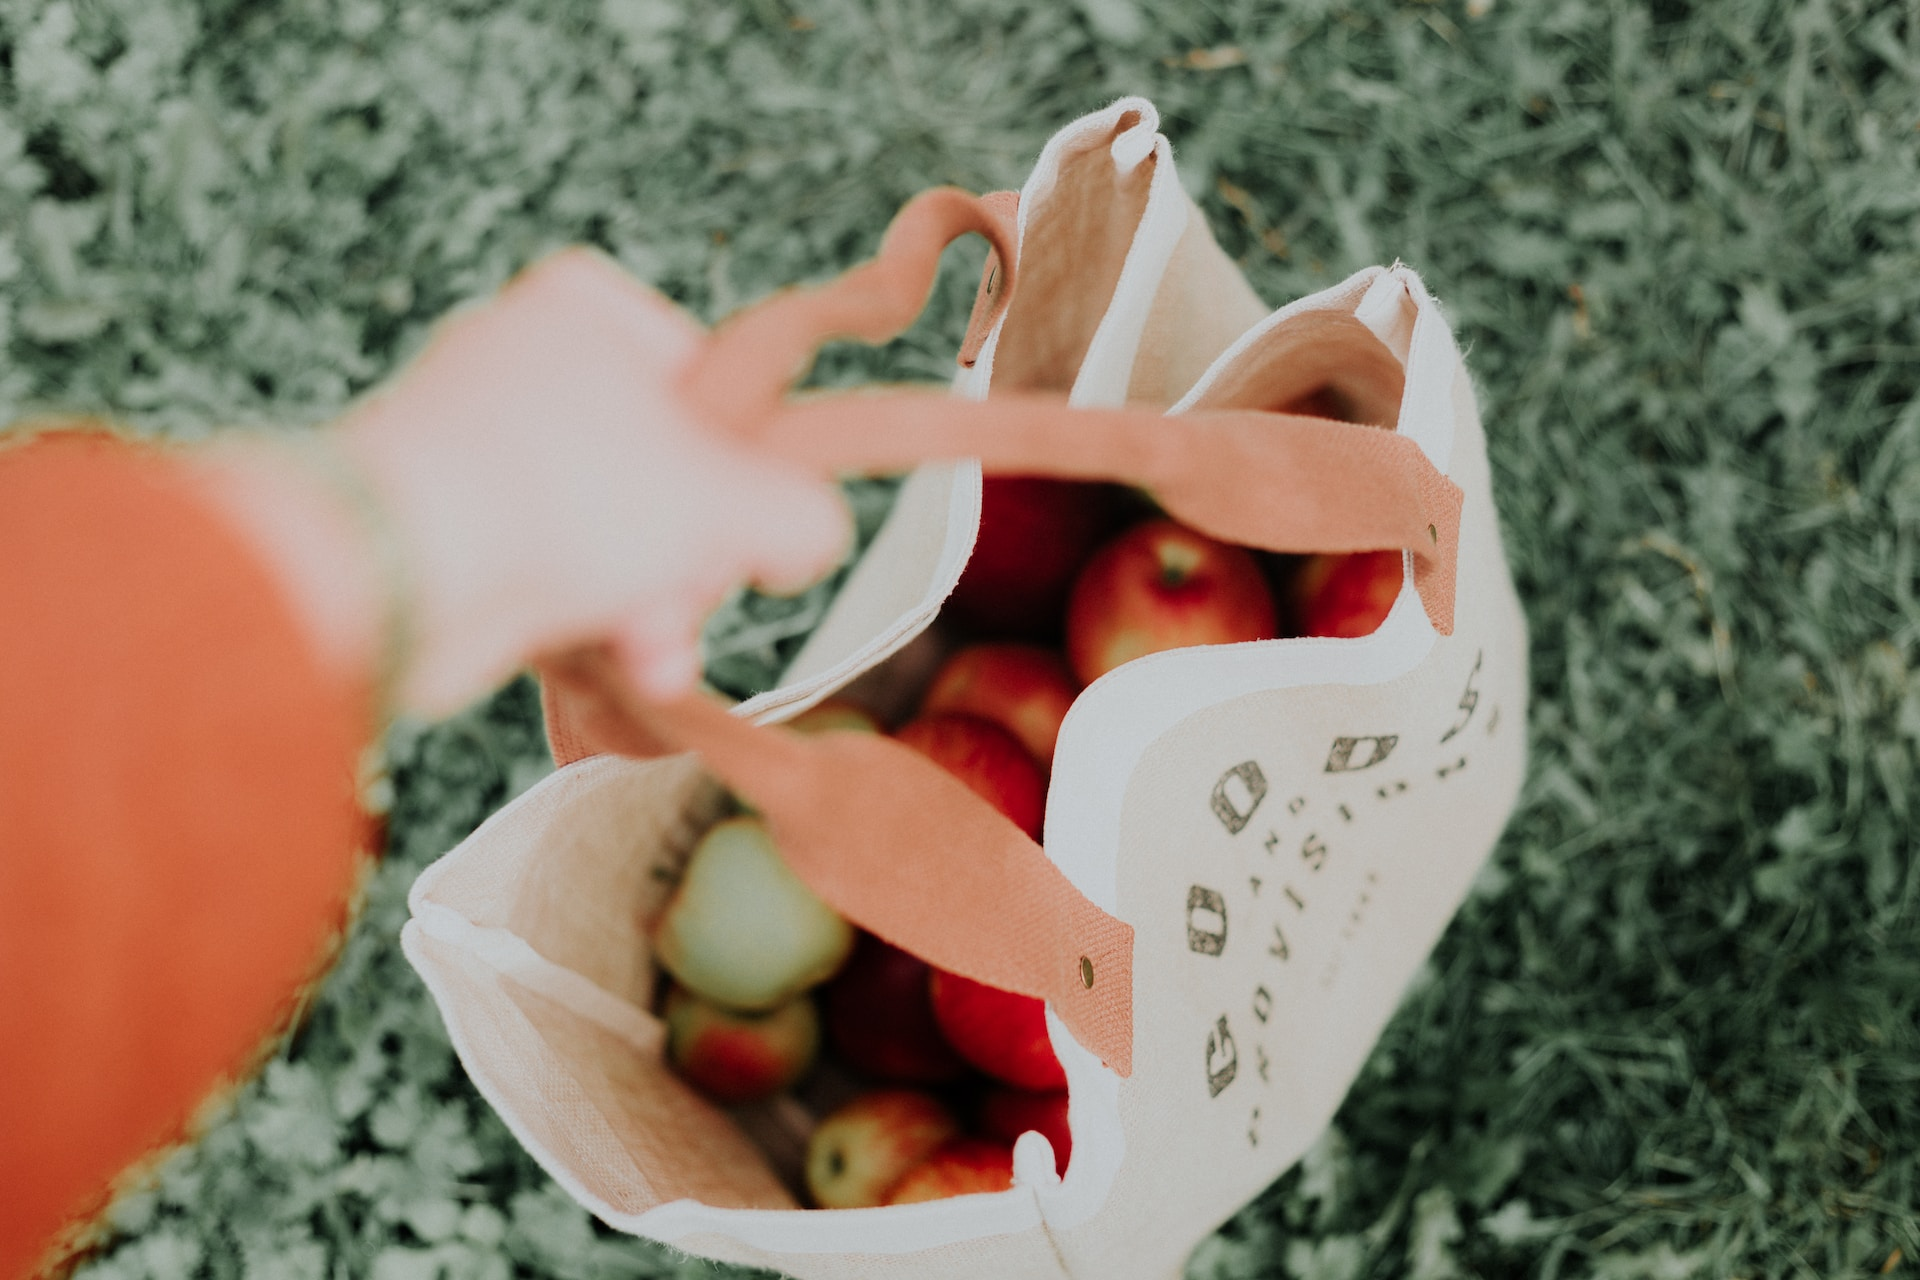 Bovenaanzicht van een linnen tas die gevuld is met appels. Er is een hand zichtbaar die de hendel vasthoudt.